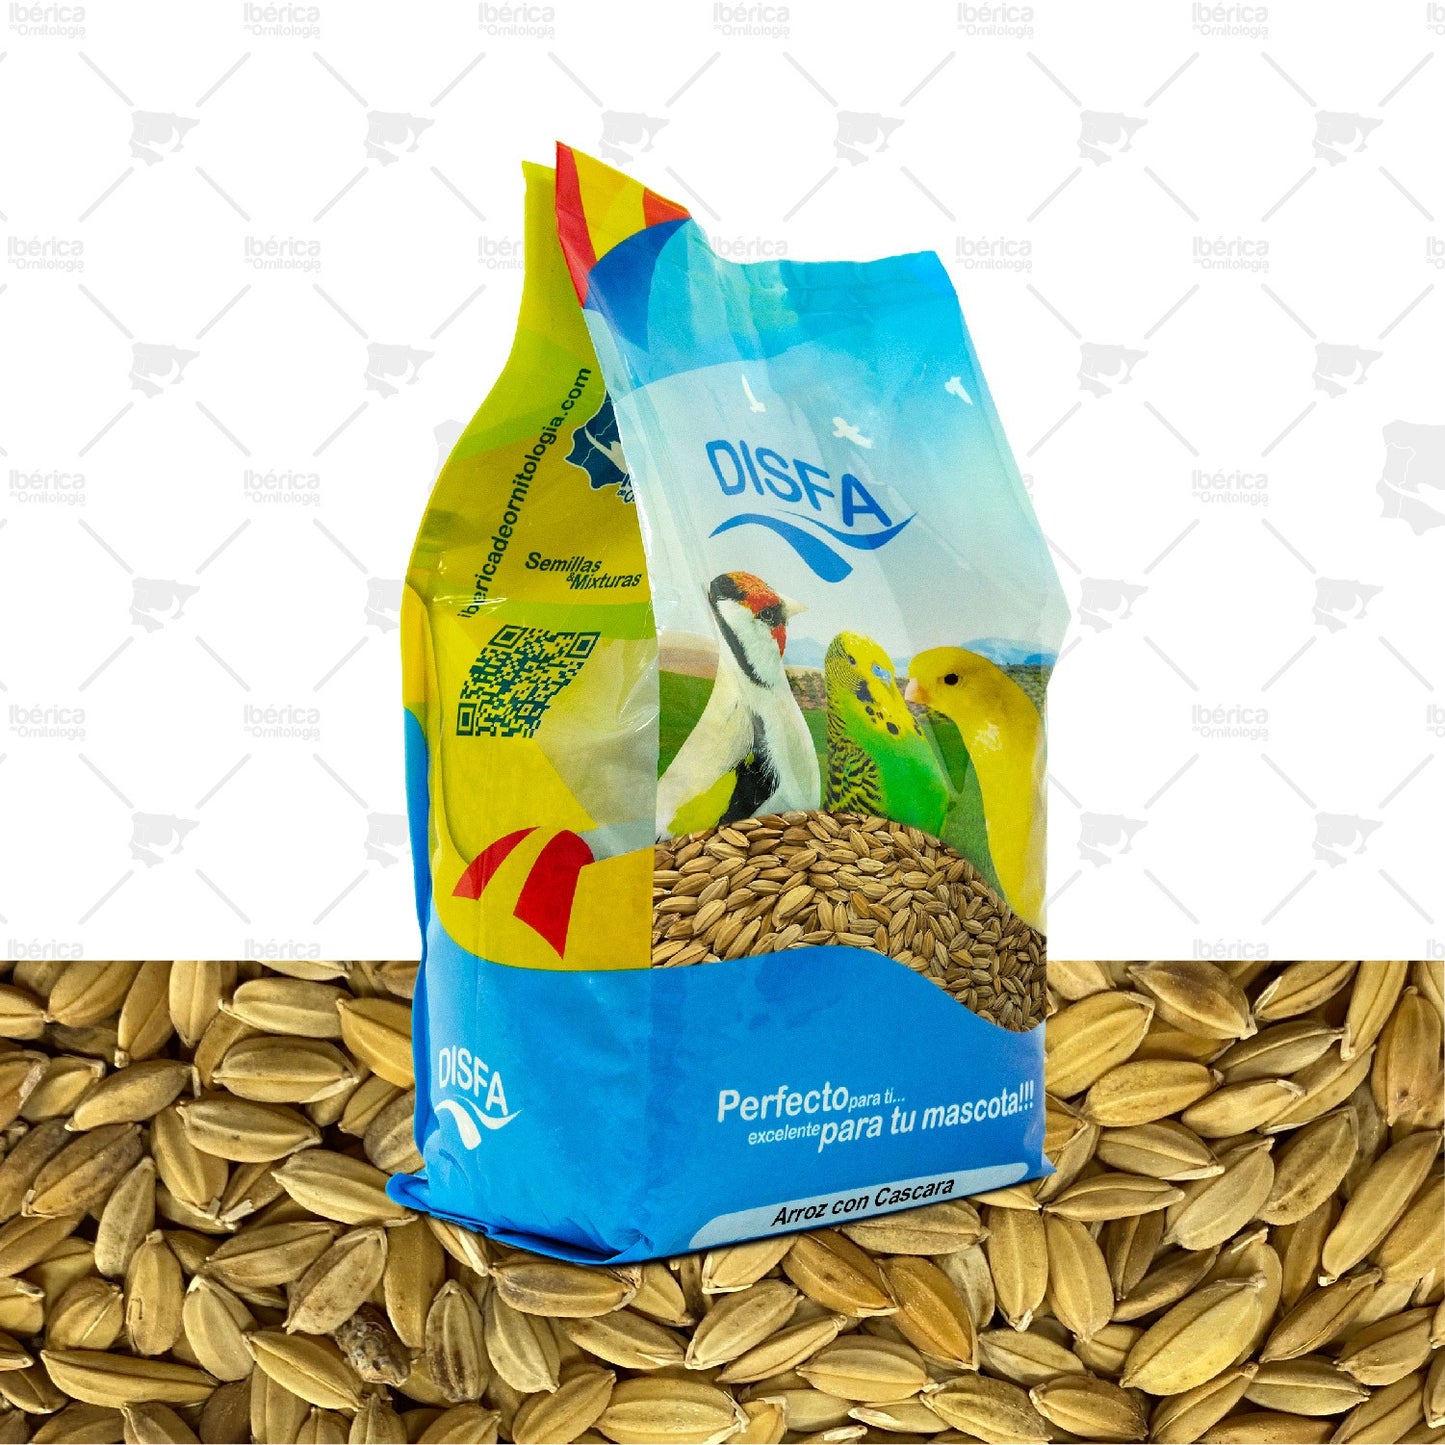 Arroz con cáscara (Disfa), semillas complementarias de cereal de arroz de alta categoría rico en nutrientes y vitaminas. ibericadeornitologia